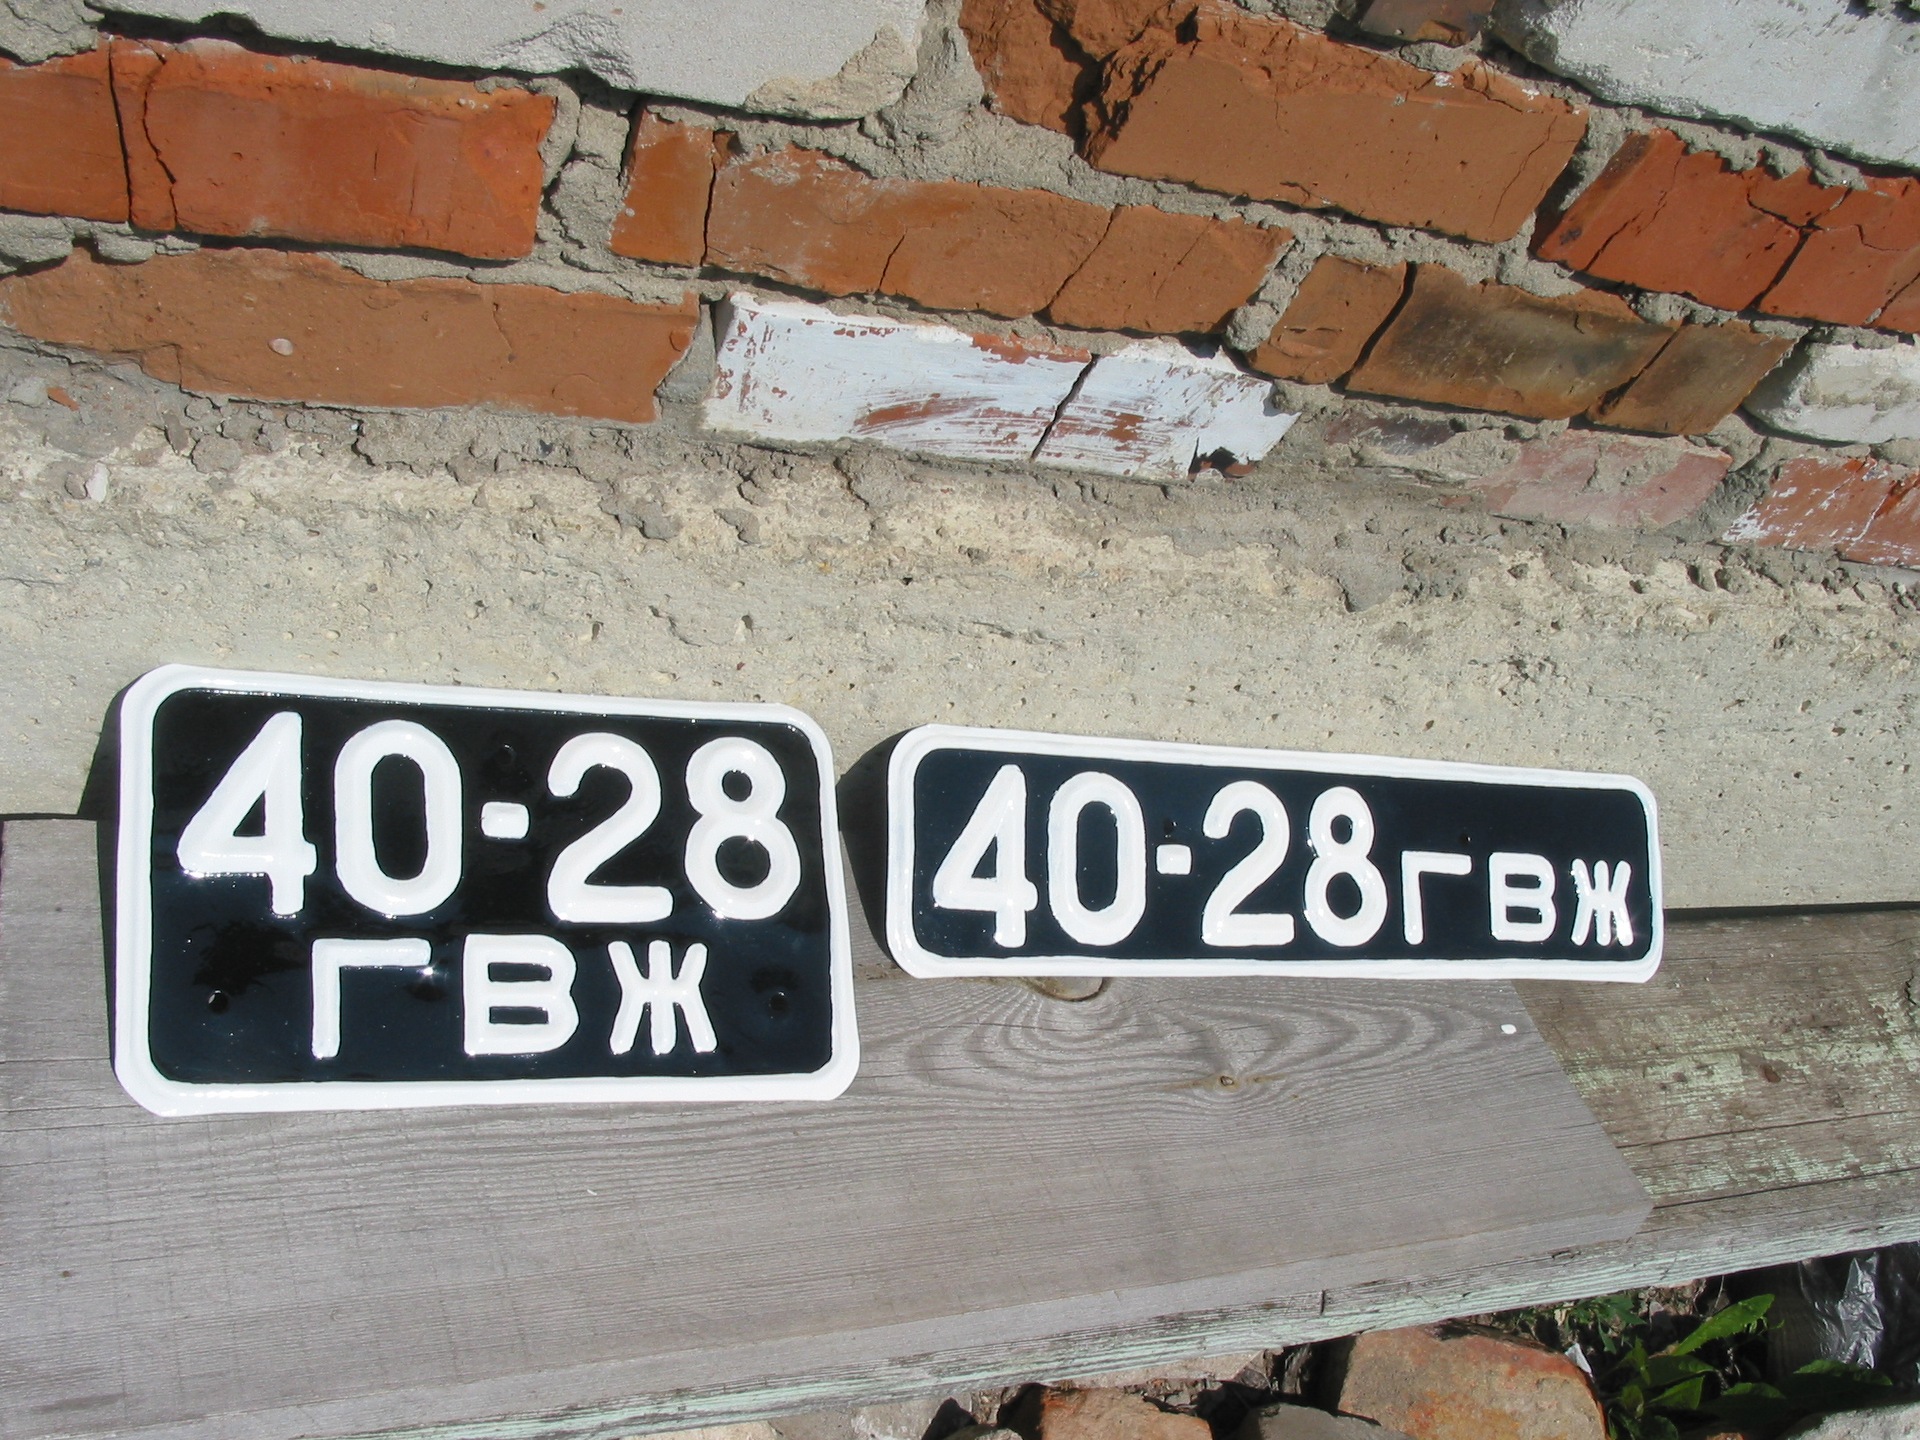 Как сохранить старые номера. Советские номера. Советские номера автомобилей. Старые советские номера мотоциклов. Старые номерные знаки.